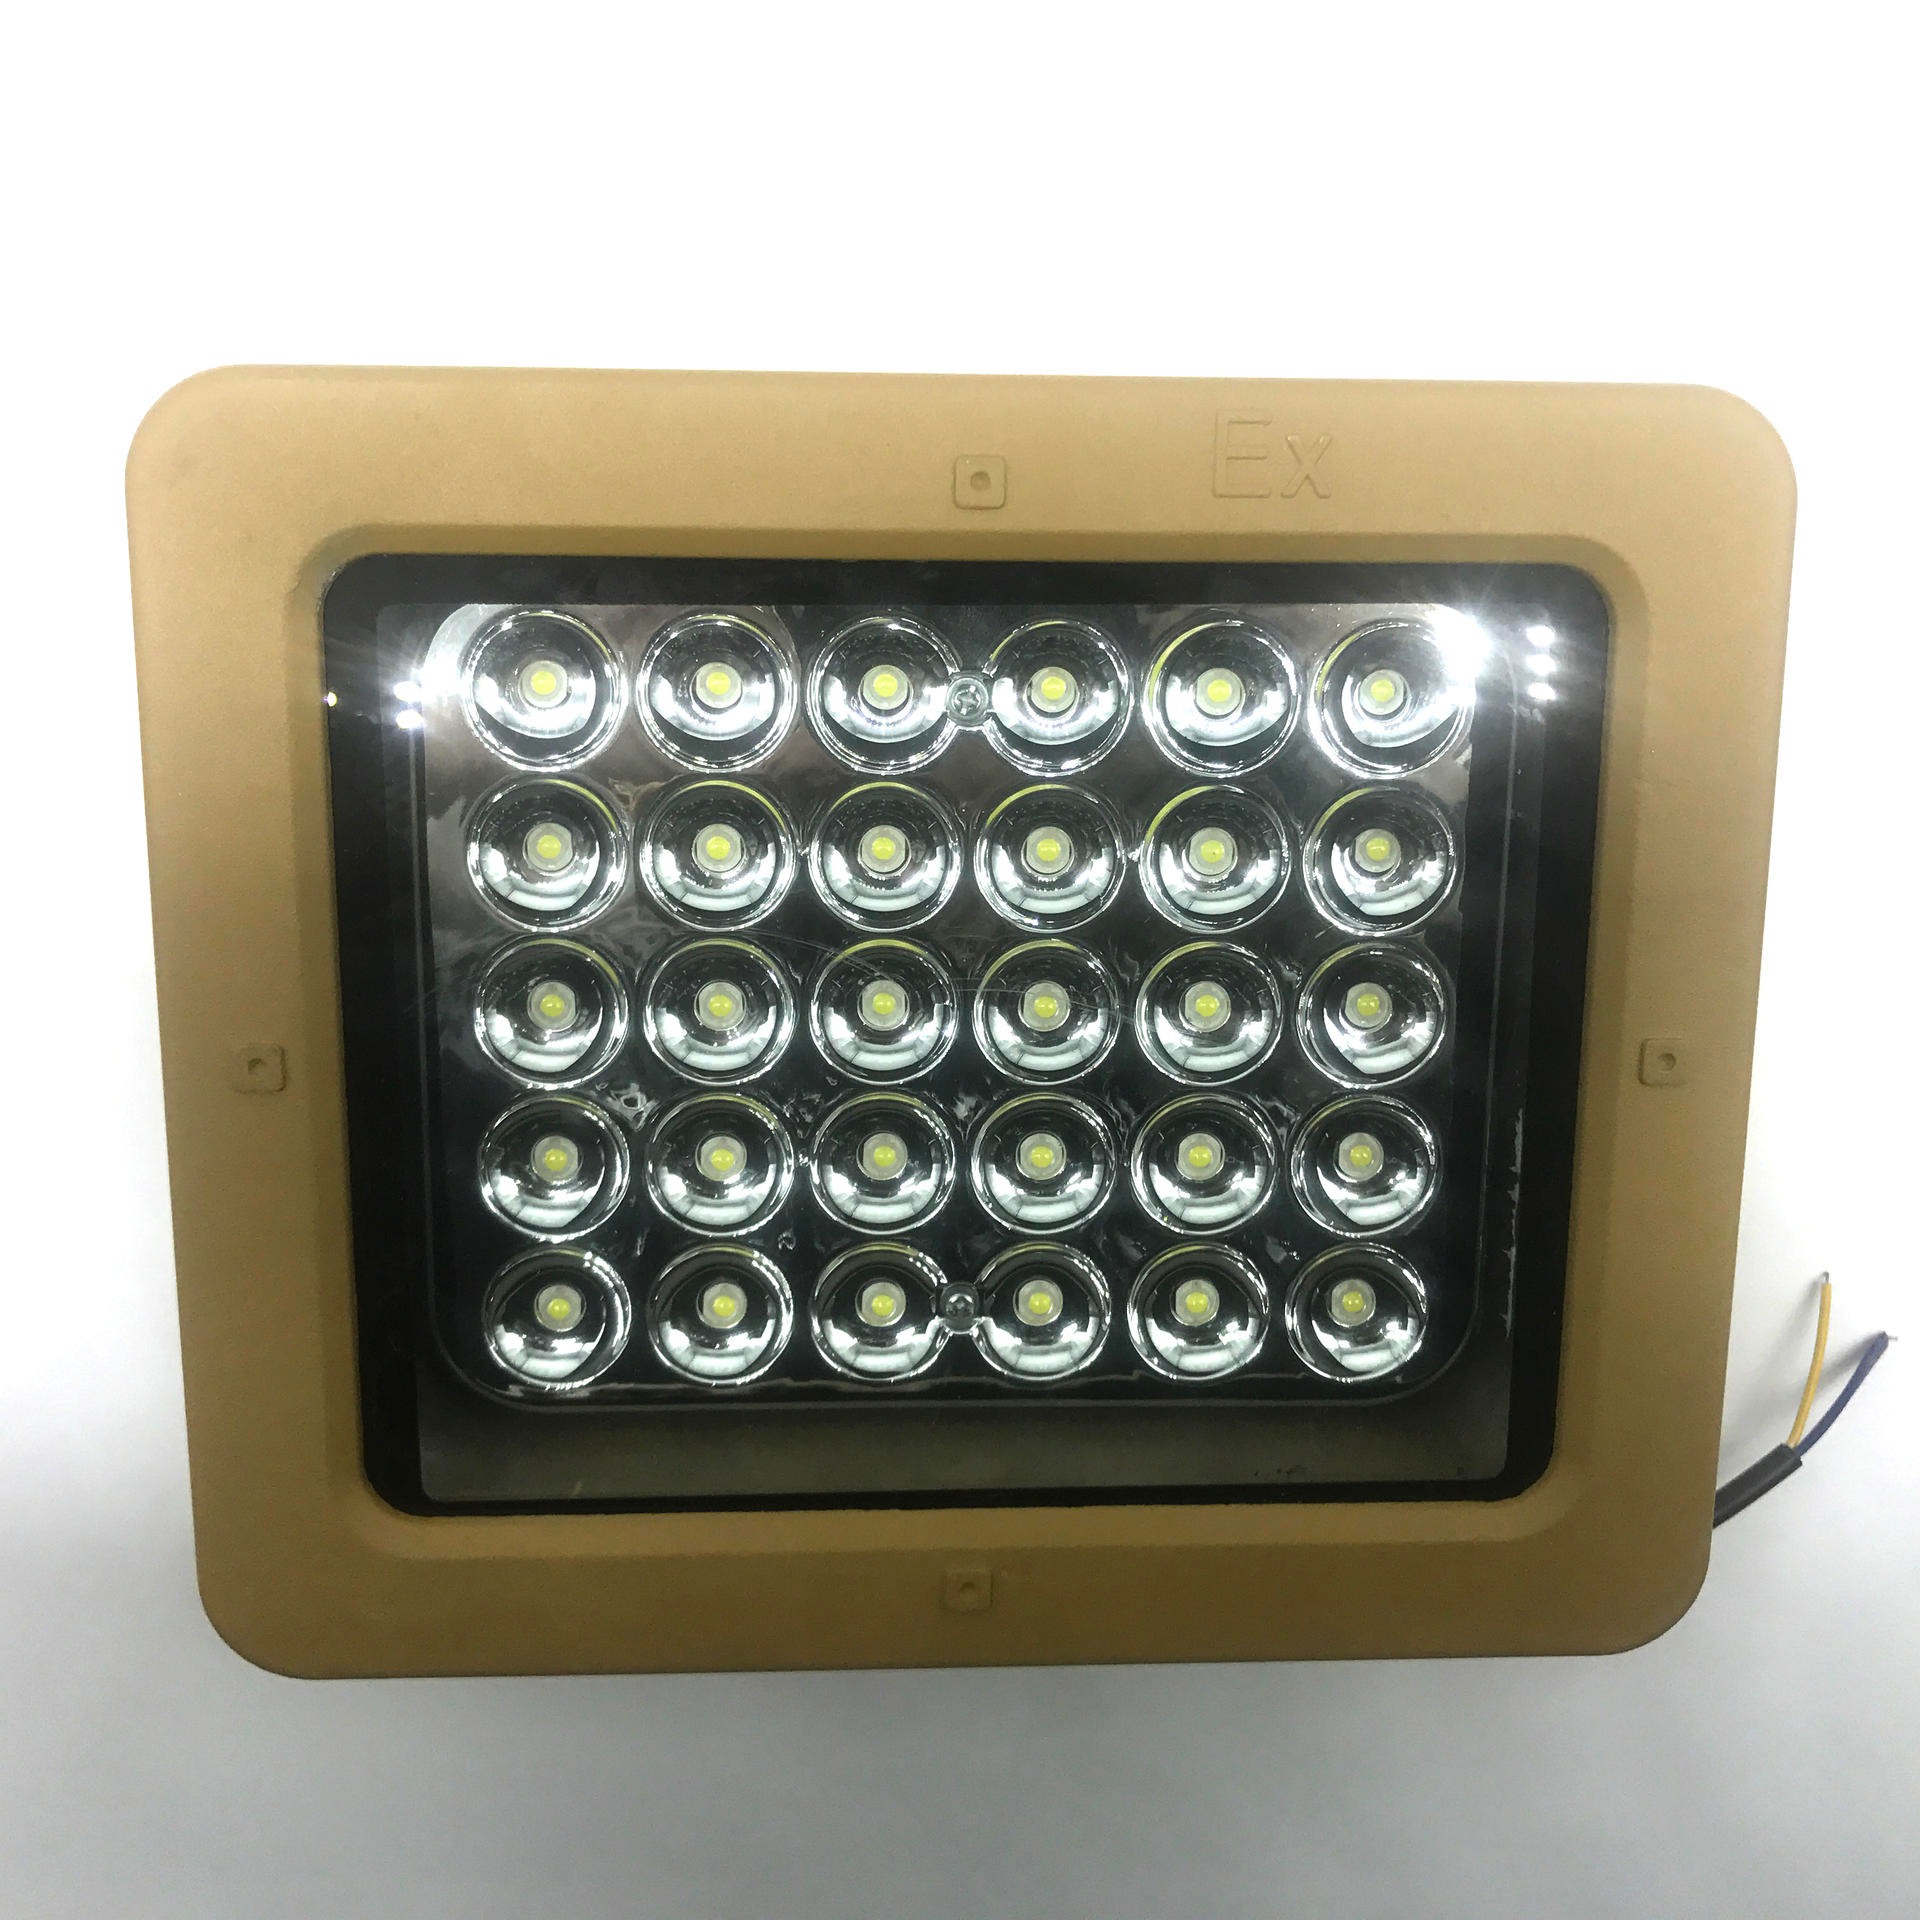 LED方形防爆灯 加油站煤硼厂房投光灯 免维护节能防爆灯 50W泛光灯图片